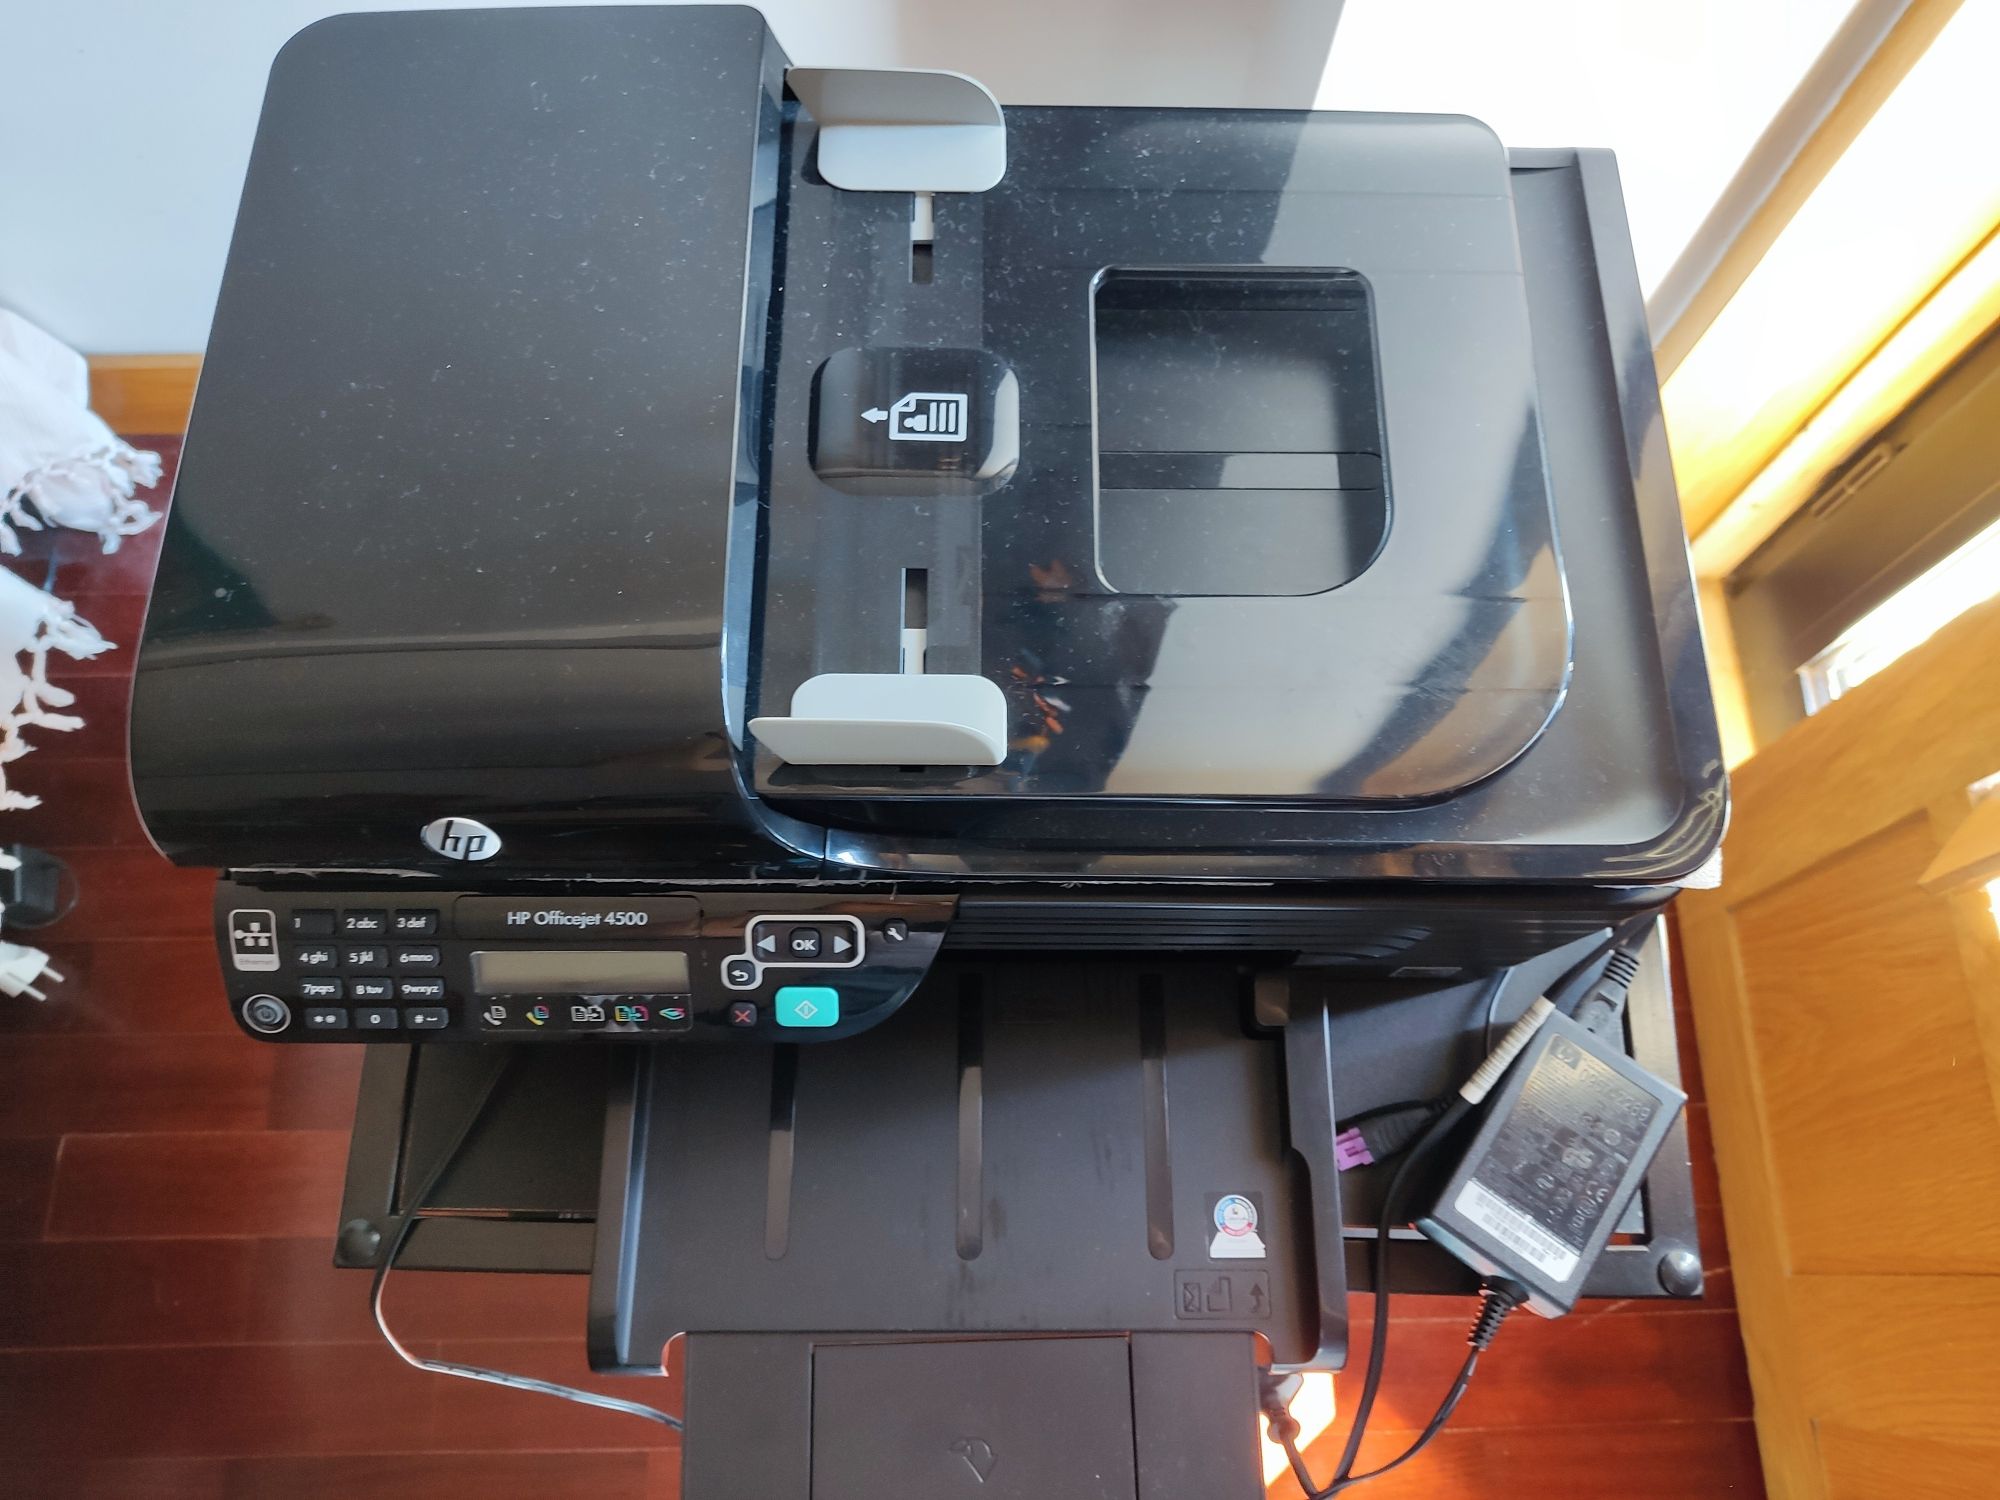 Impressora HP OfficeJet 4500 impecável com tinteiro preto virgem